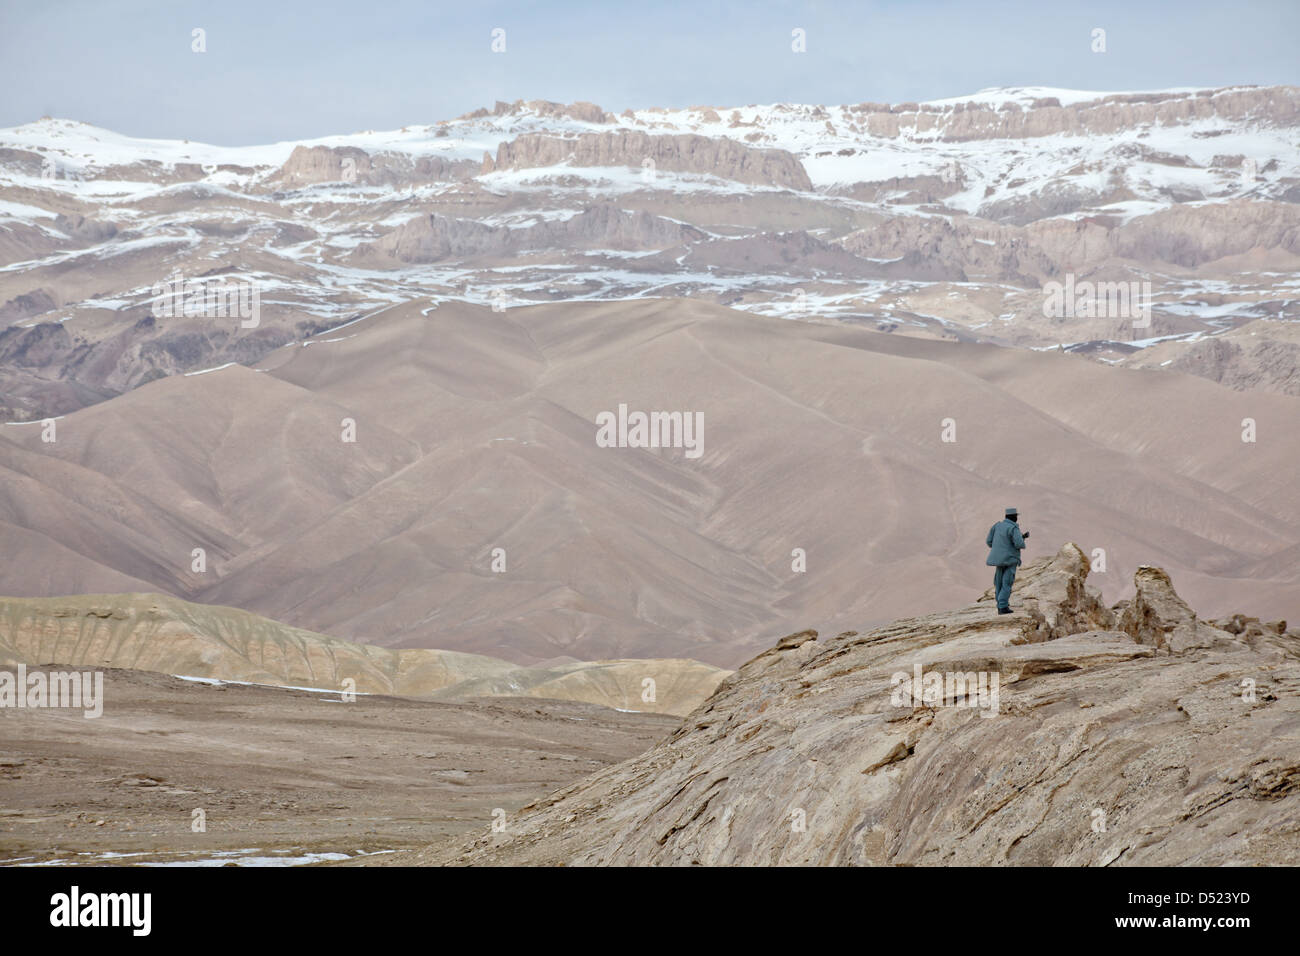 Una polizia nazionale afgana officer fornisce la sicurezza sulla cima di una collina che domina una valle Marzo 11, 2013 in provincia di Bamiyan, Afghanistan. Foto Stock